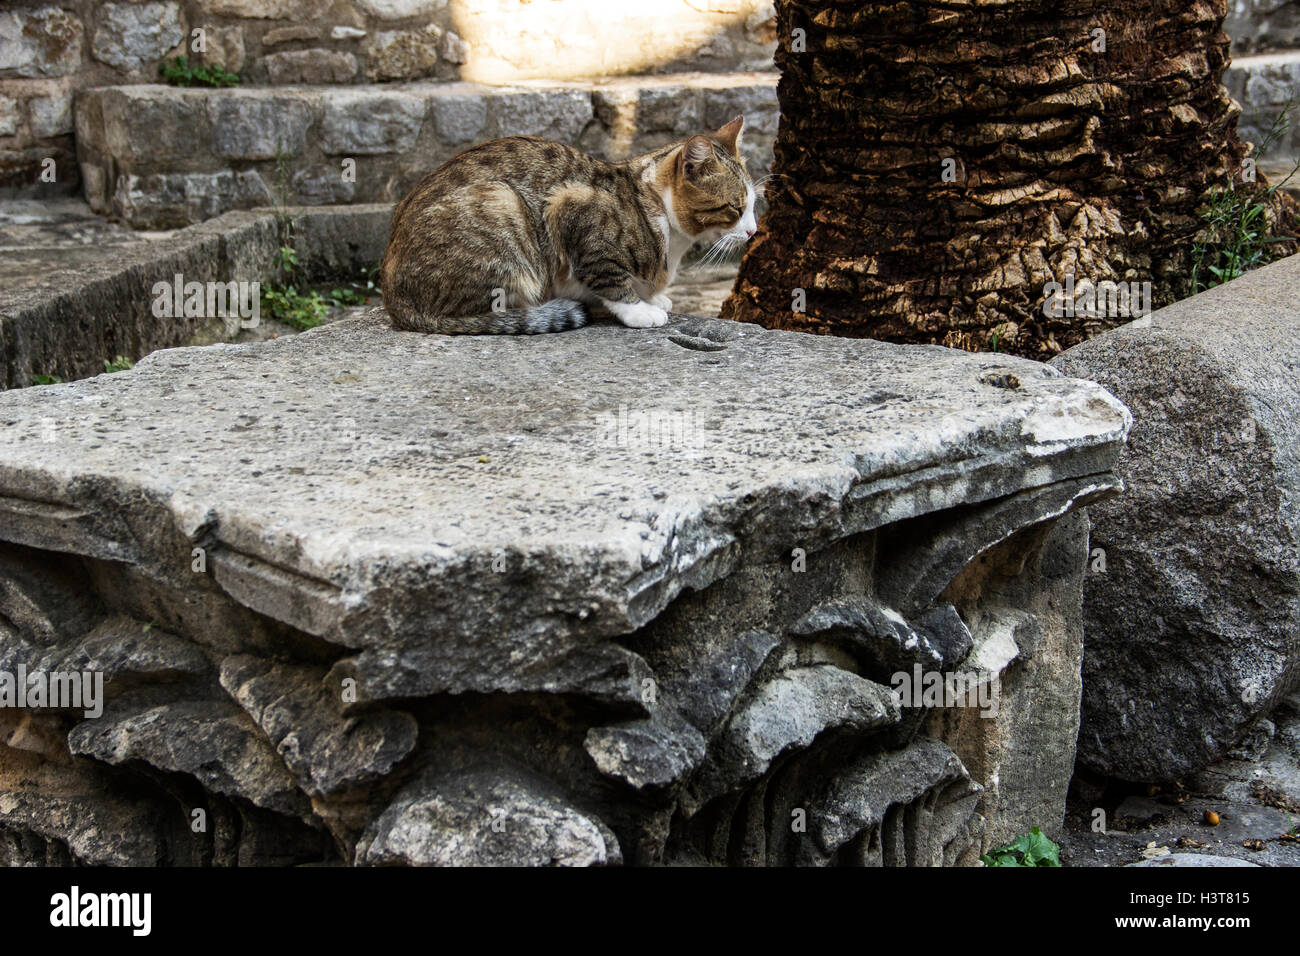 Vieille ville de Budva, Monténégro - un chat errant la sieste sur d'anciens vestiges de pierre Banque D'Images